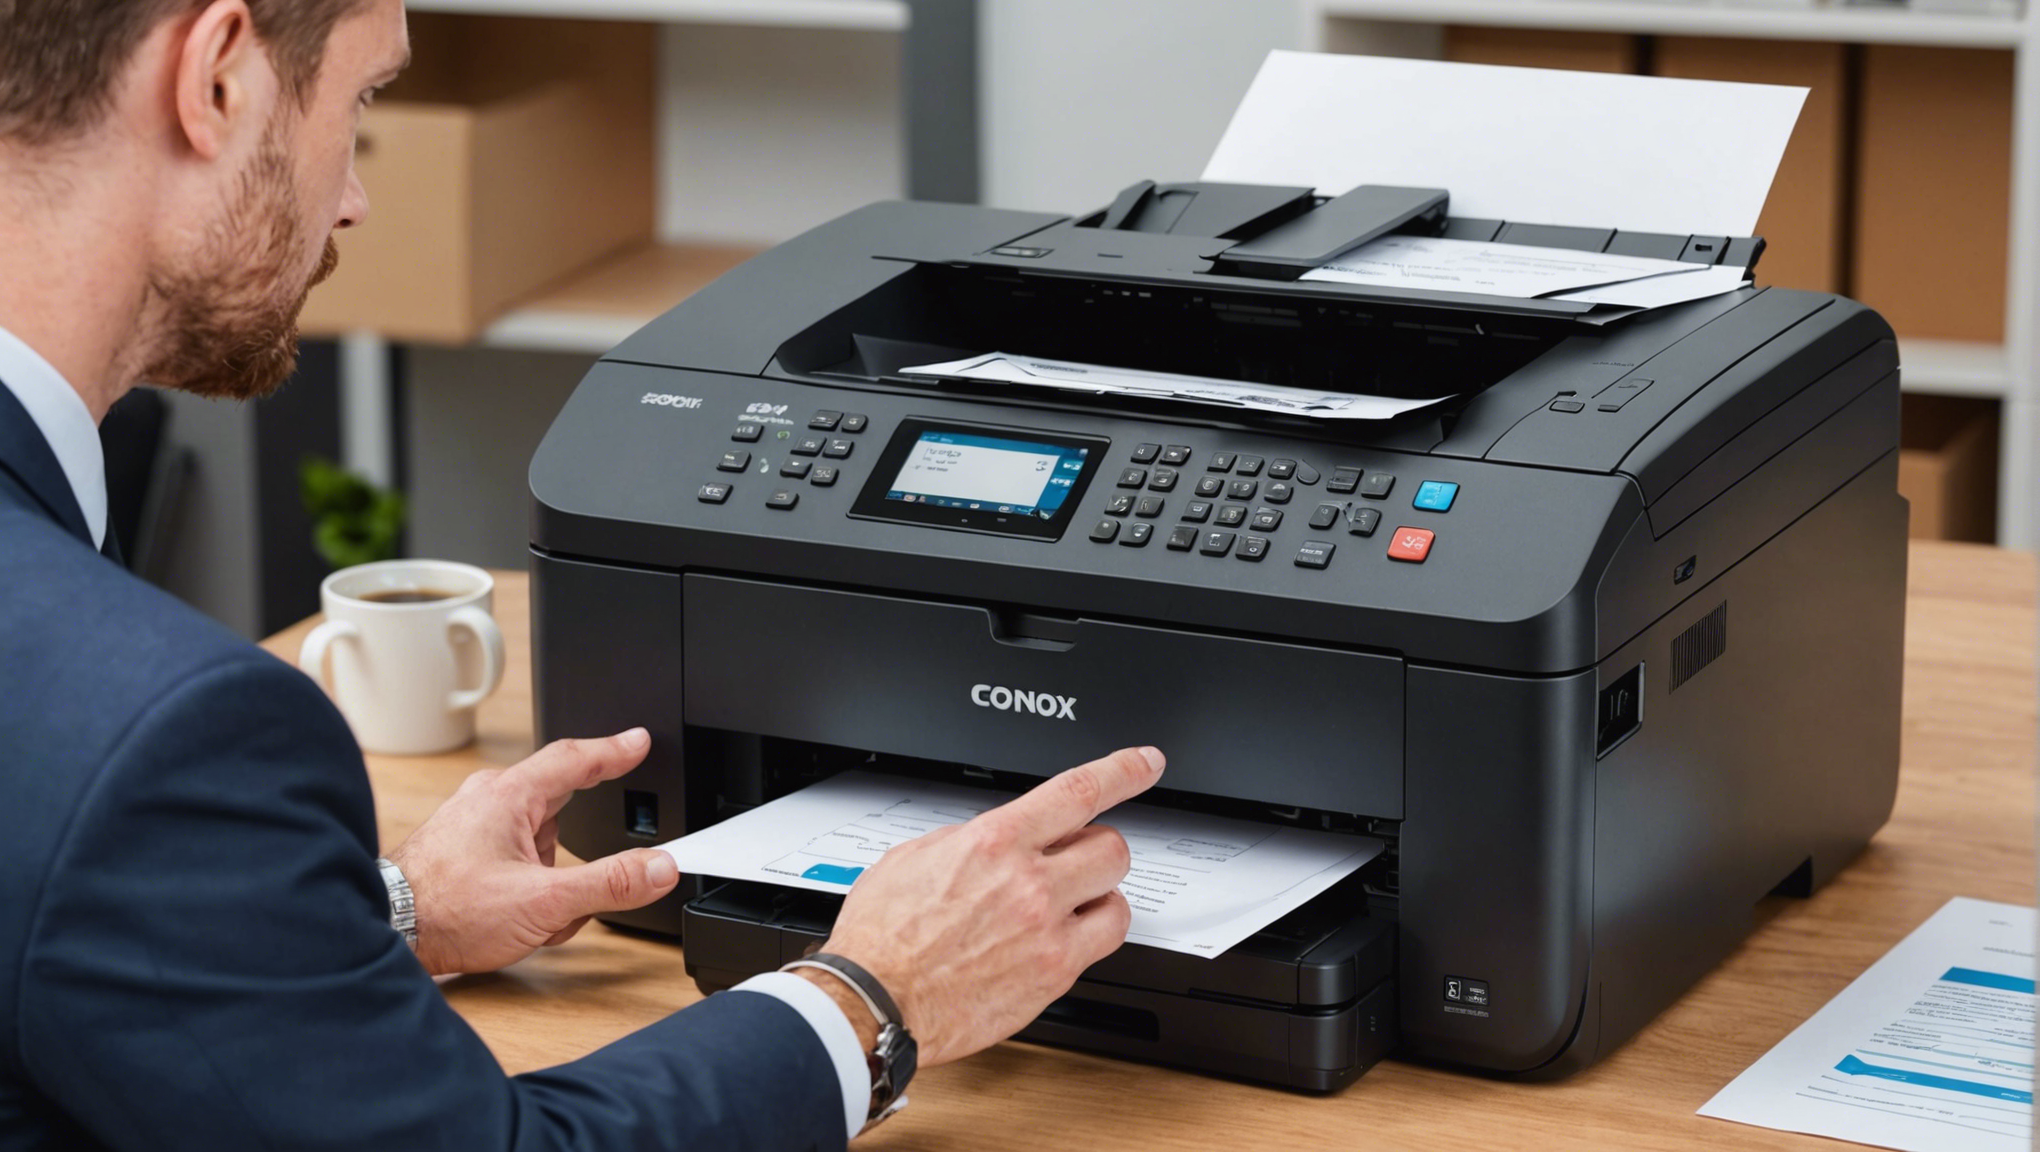 découvrez notre sélection d'imprimantes professionnelles à prix abordables dotées de fonctions de fax. idéales pour les petites entreprises et les utilisateurs à domicile.